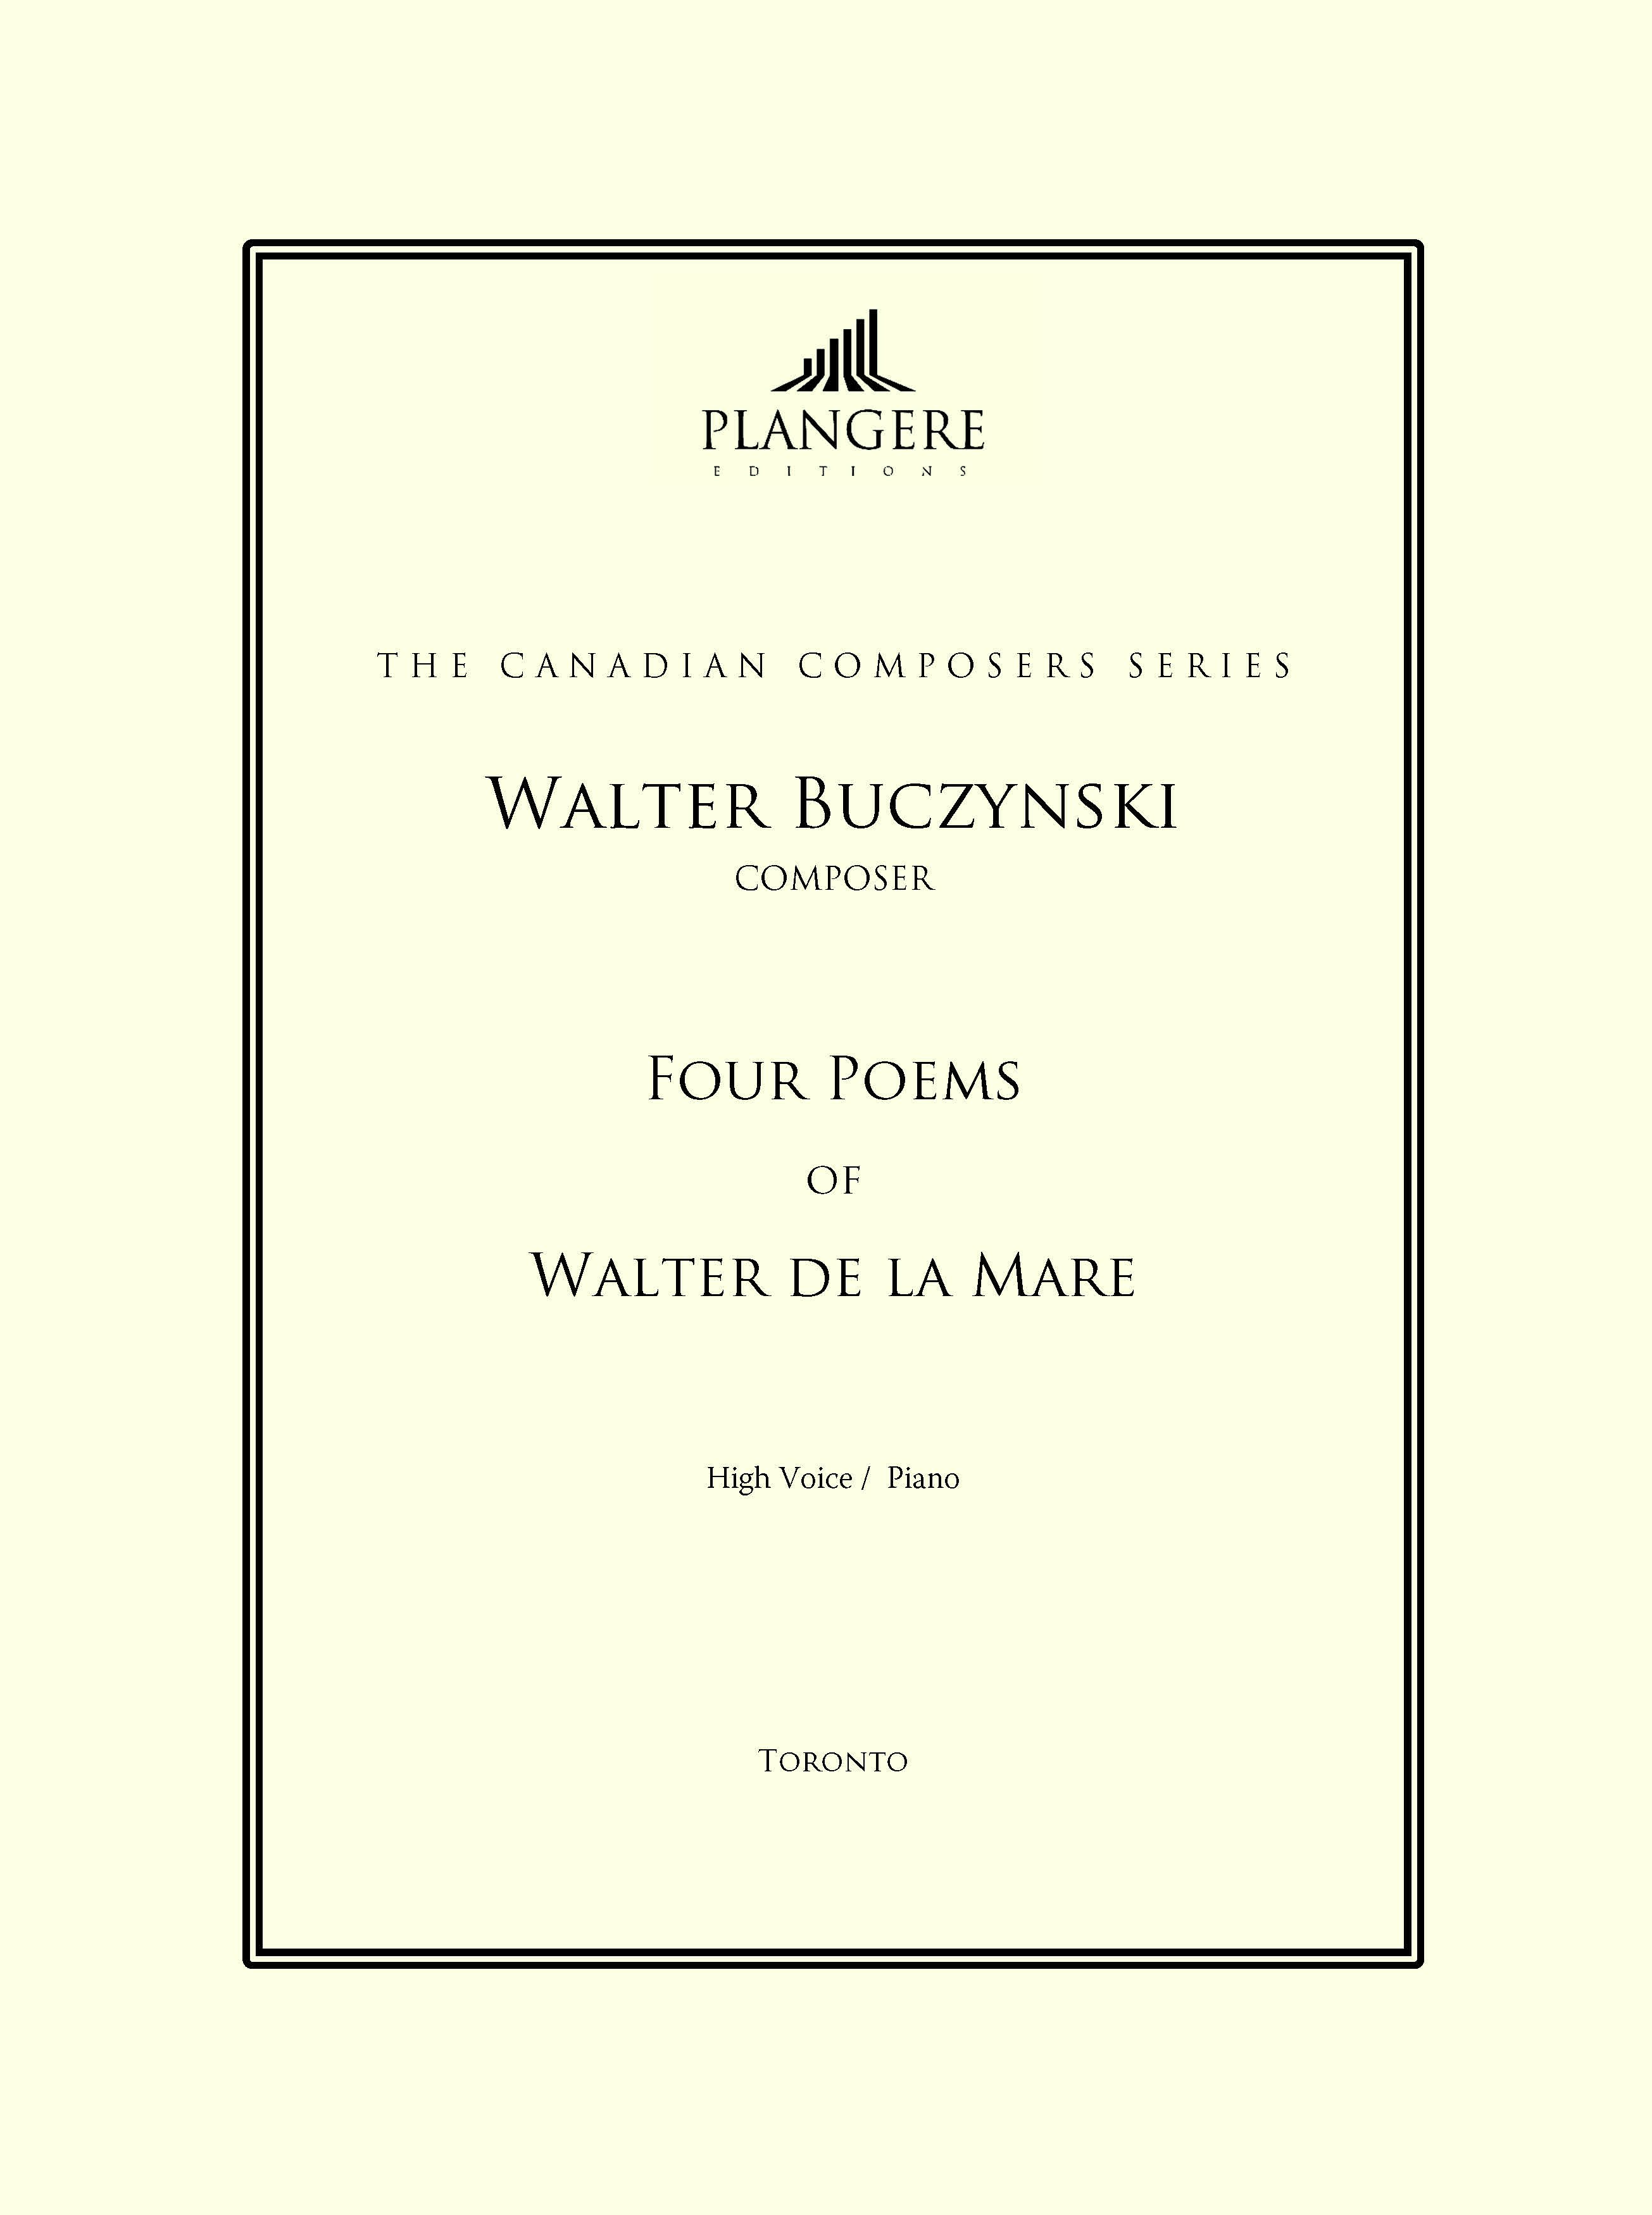 Four Poems of Walter de la Mare